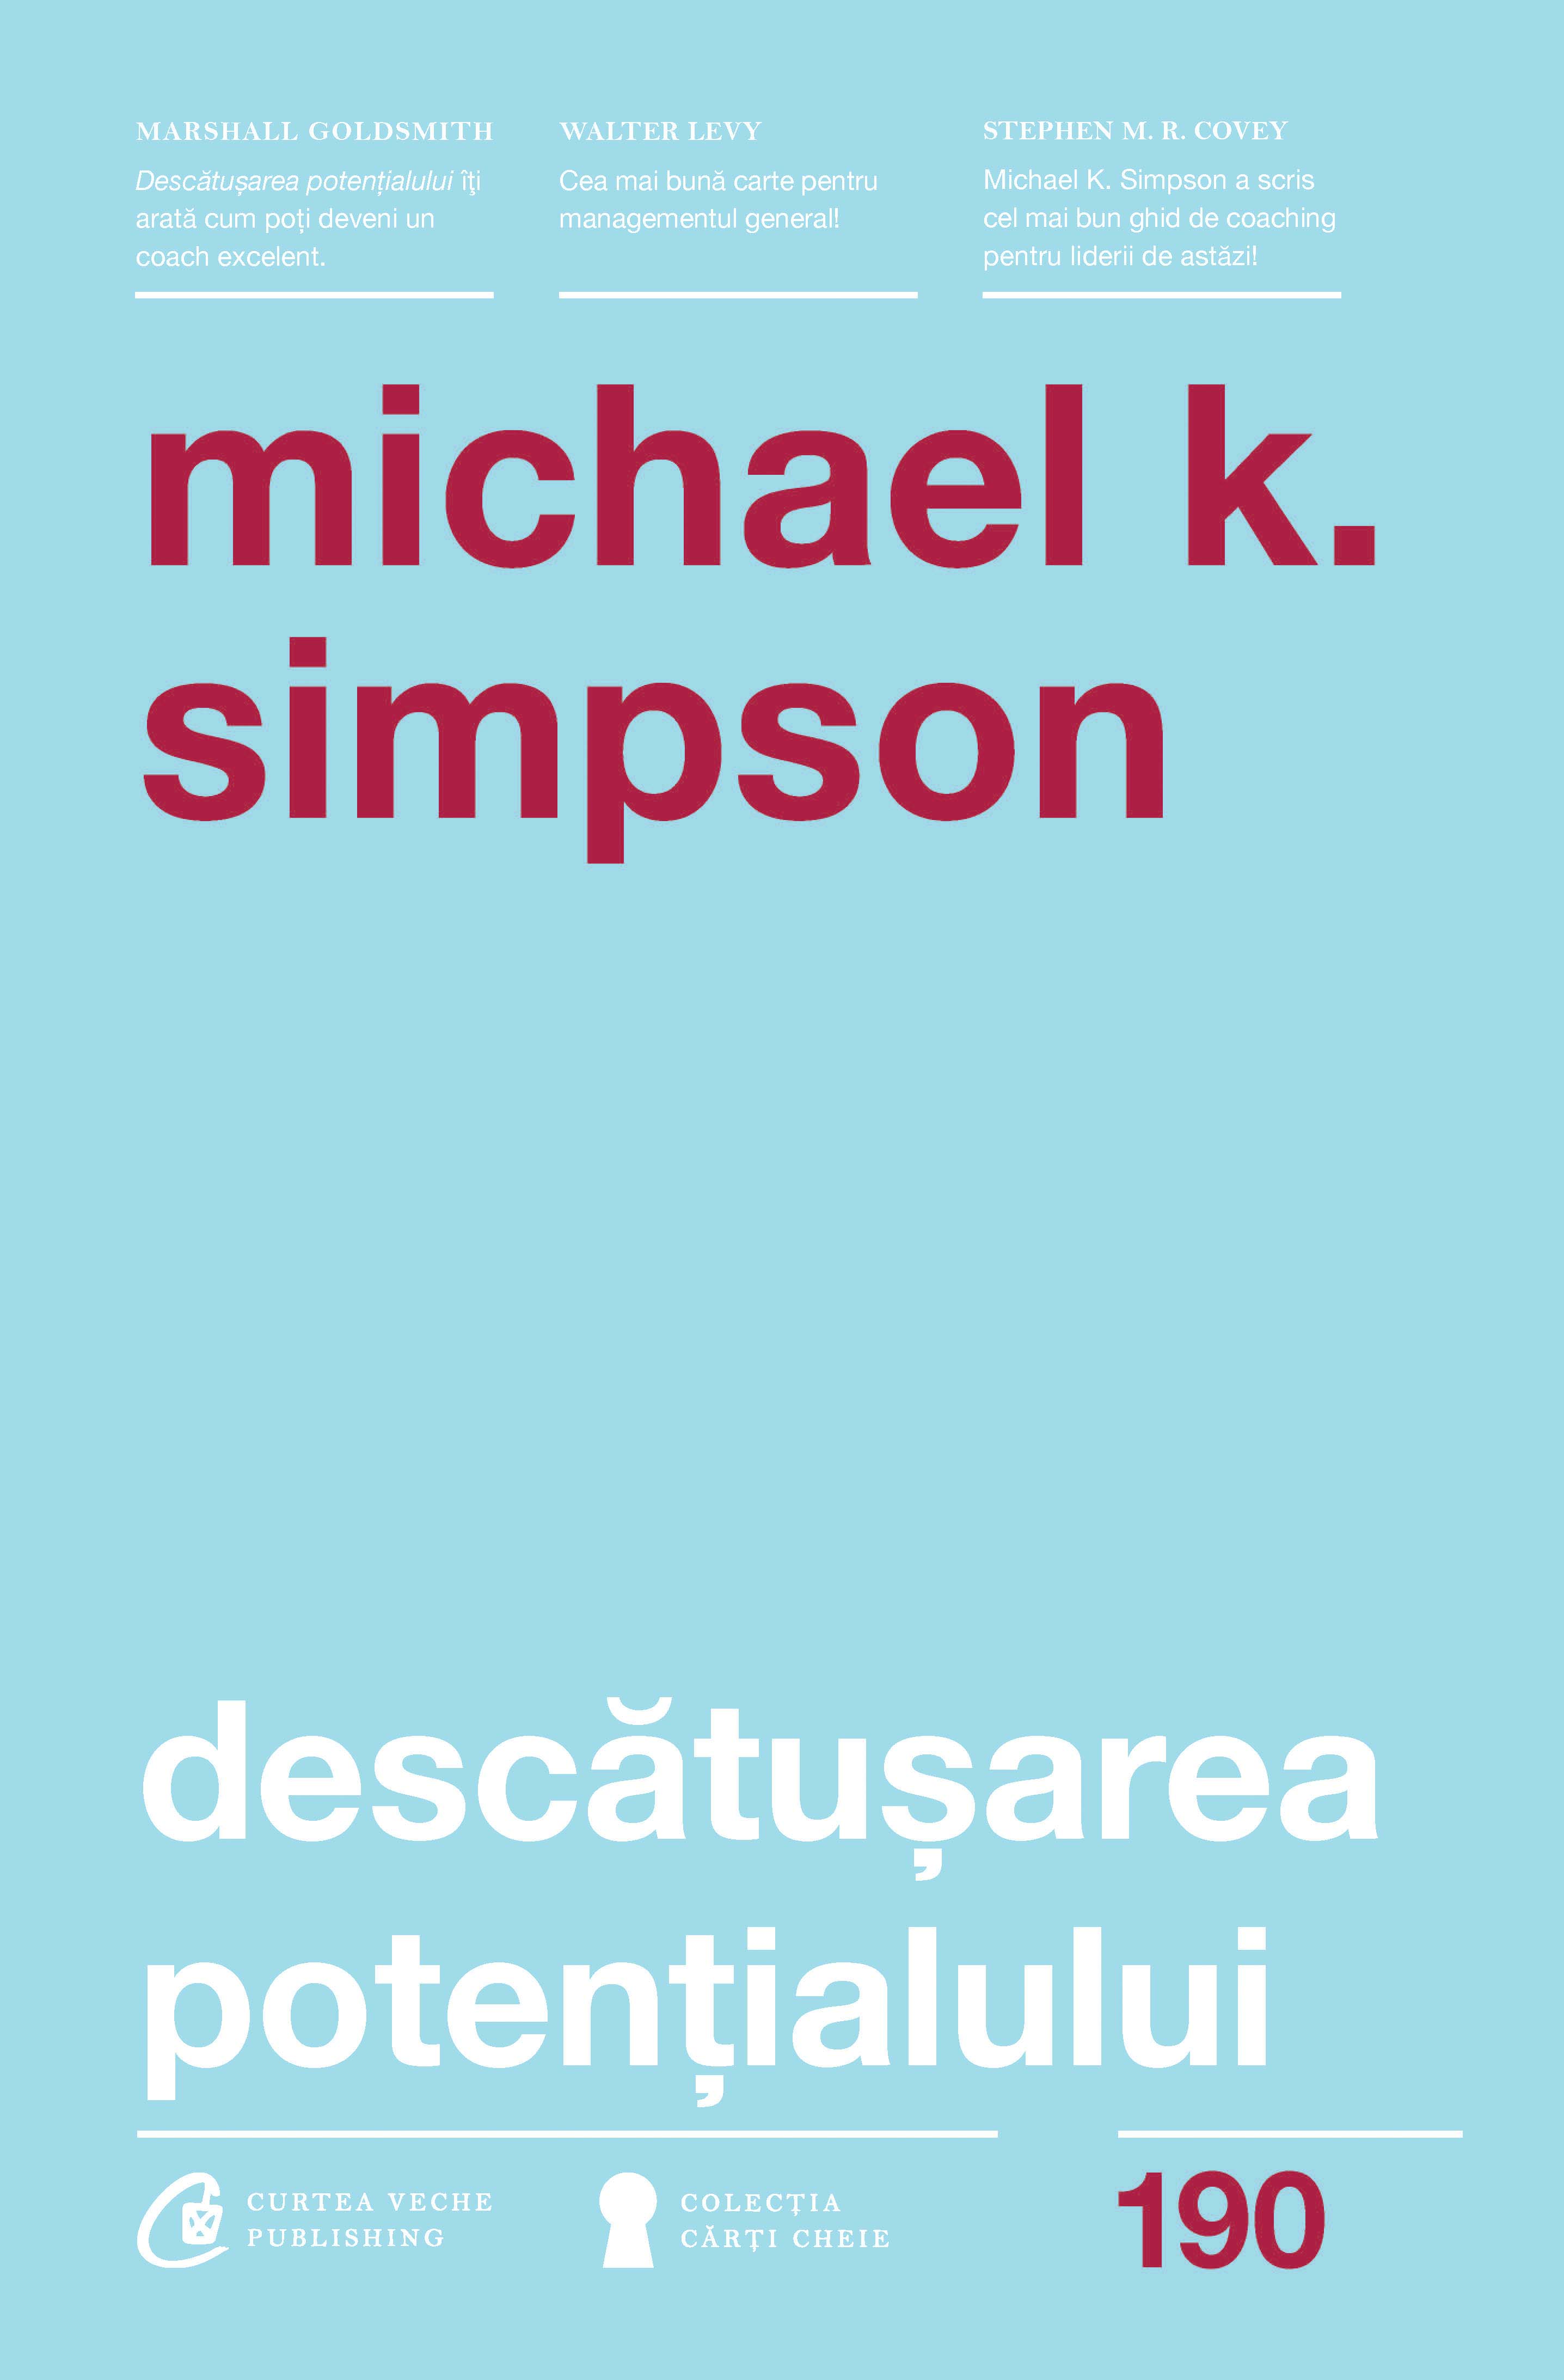 Descatusarea potentialului | Michael K. Simpson carturesti.ro imagine 2022